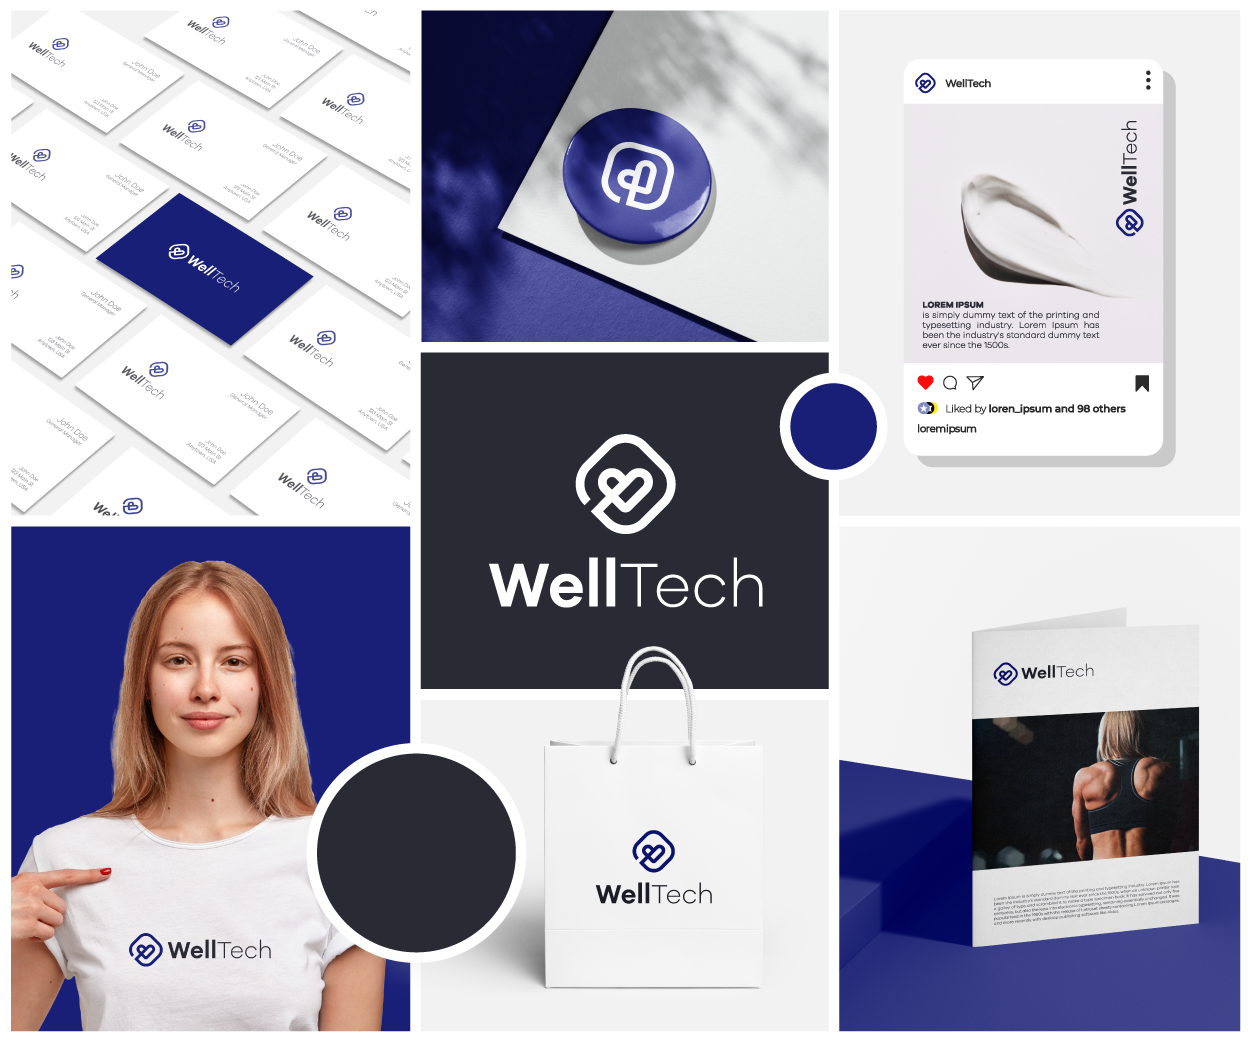 WellTech is wellness-related digital content.